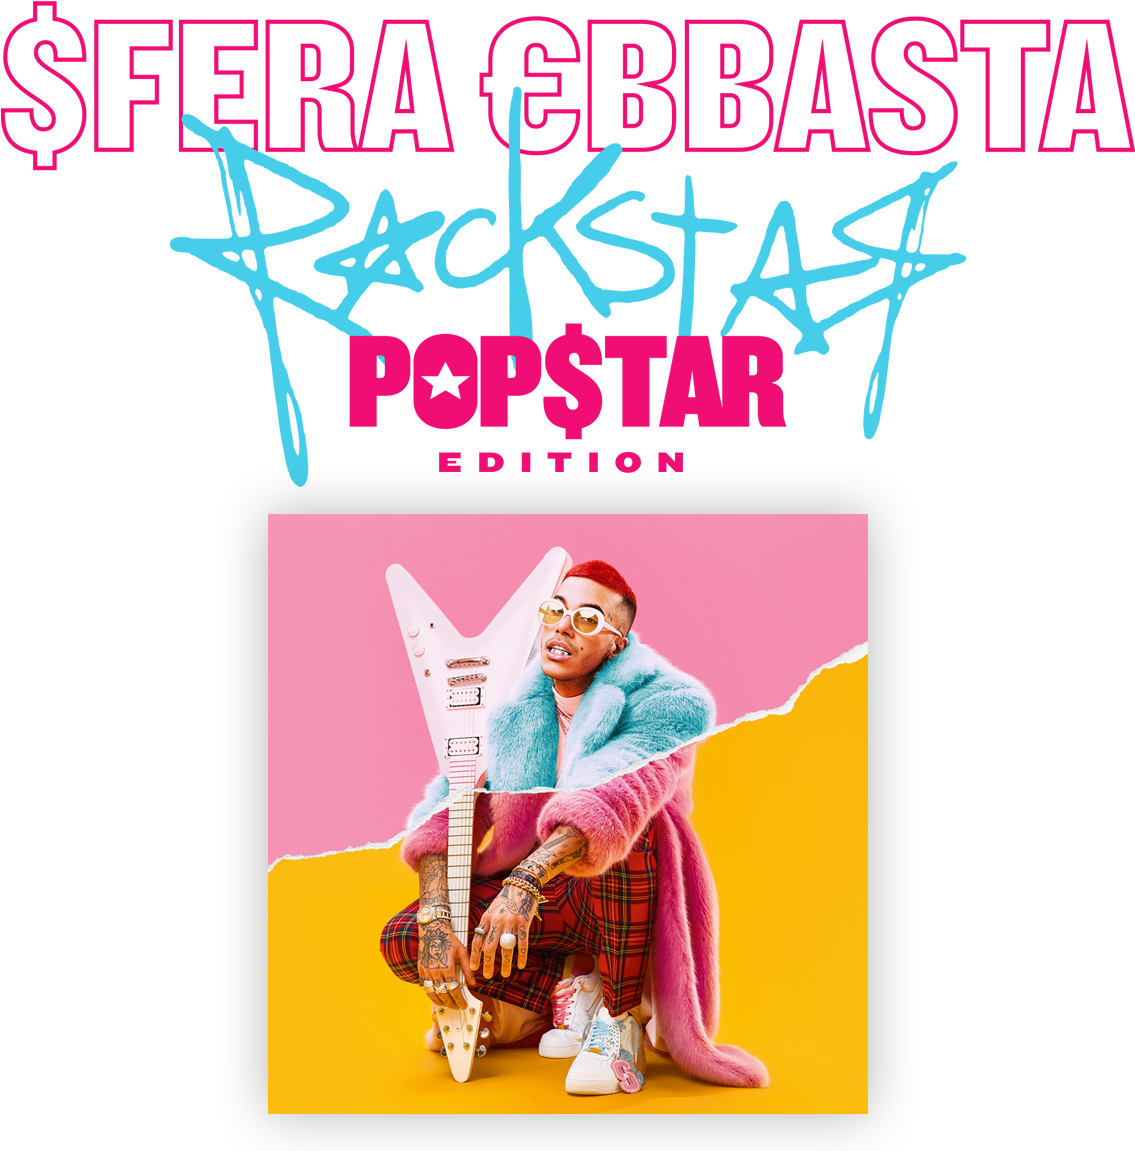 Sfera Ebbasta Rockstar Popstar Edition Album Cover PNG image